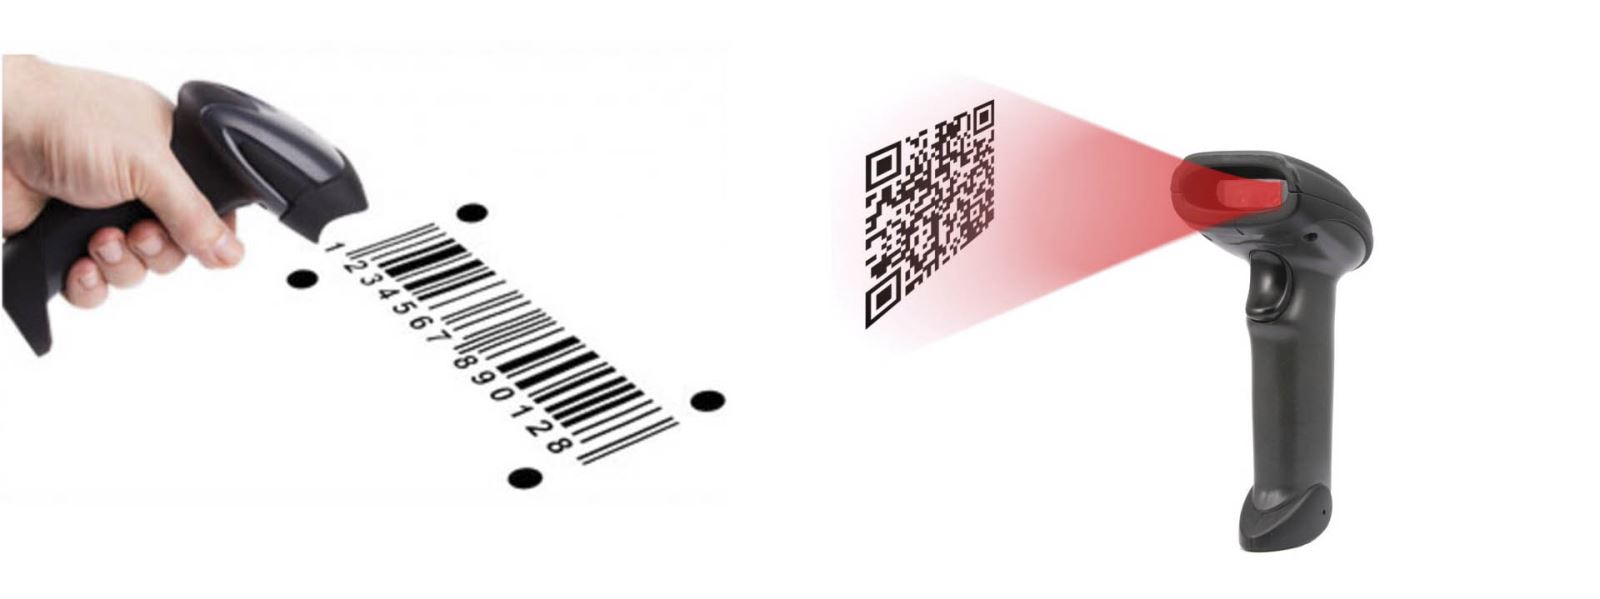 Máy Quét Mã Vạch (barcode) Cầm Tay 2D Có Dây Sử Dụng Cổng USB - bắn được các loại mã vạch 1D (dạng hình chữ nhật) và 2D (dạng hình vuông) - hàng nội địa TQ cao cấp - JR6208